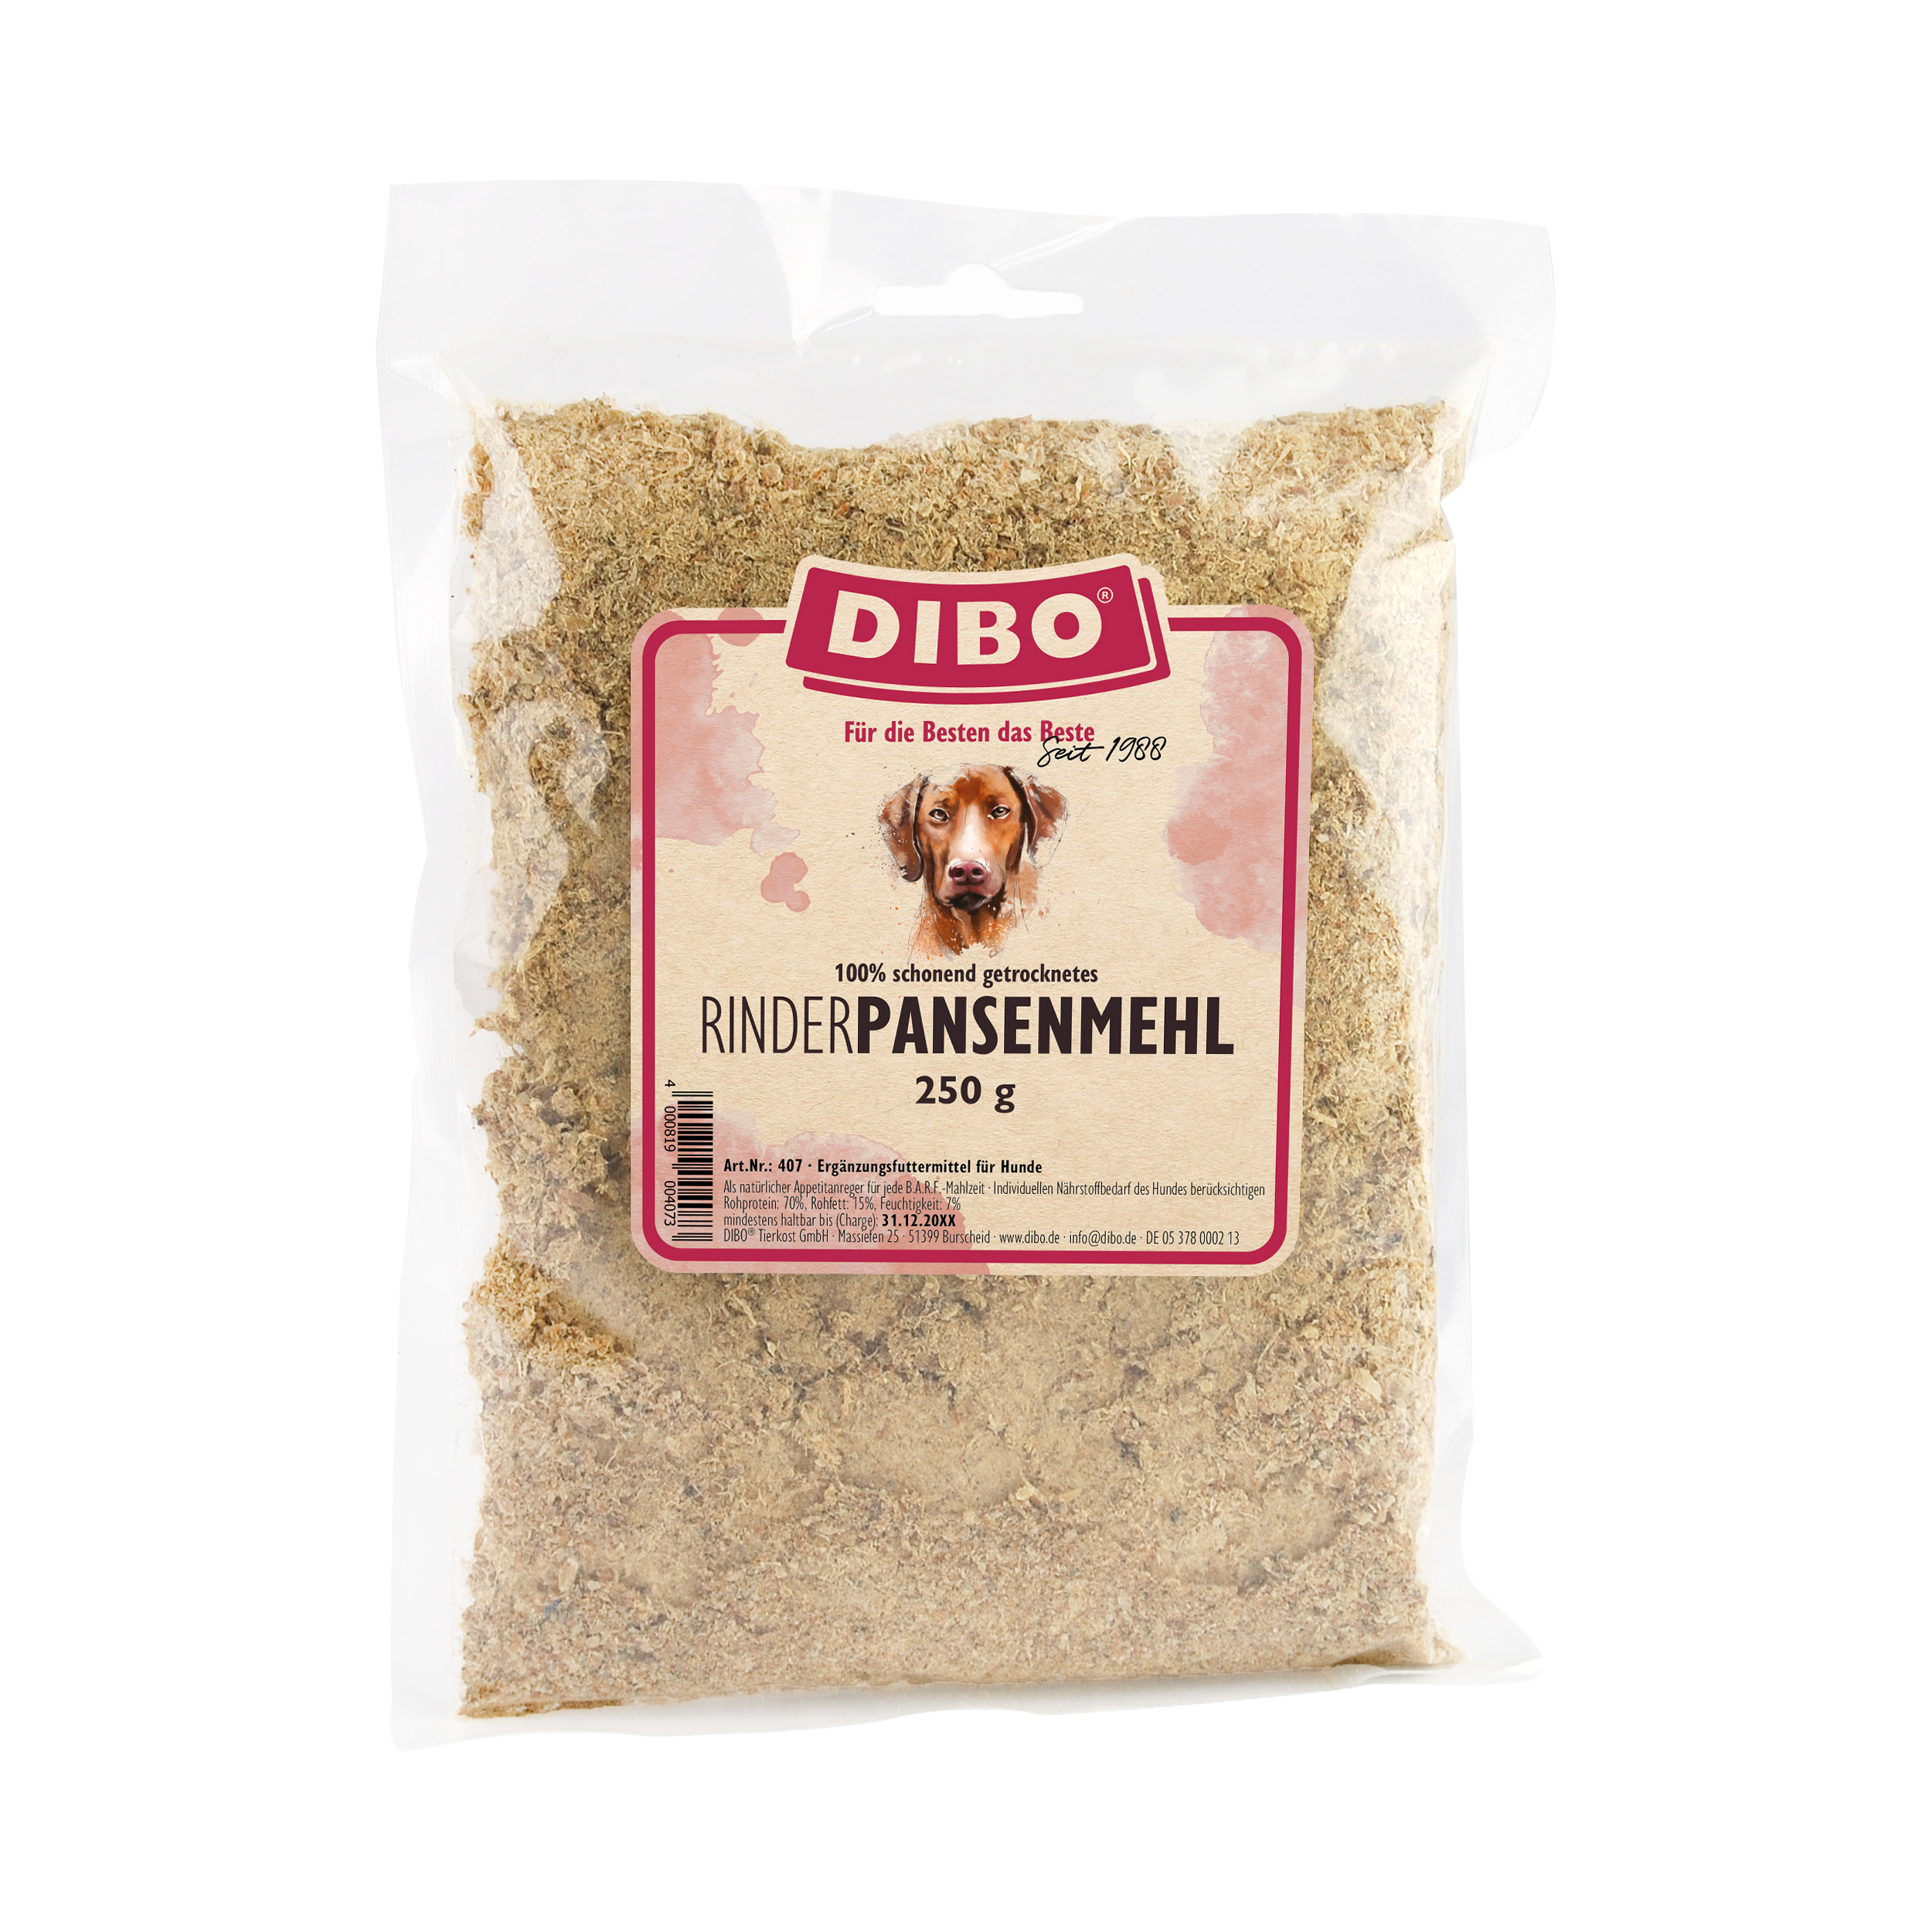 DIBO Rinder-Pansenmehl, 250g-Beutel